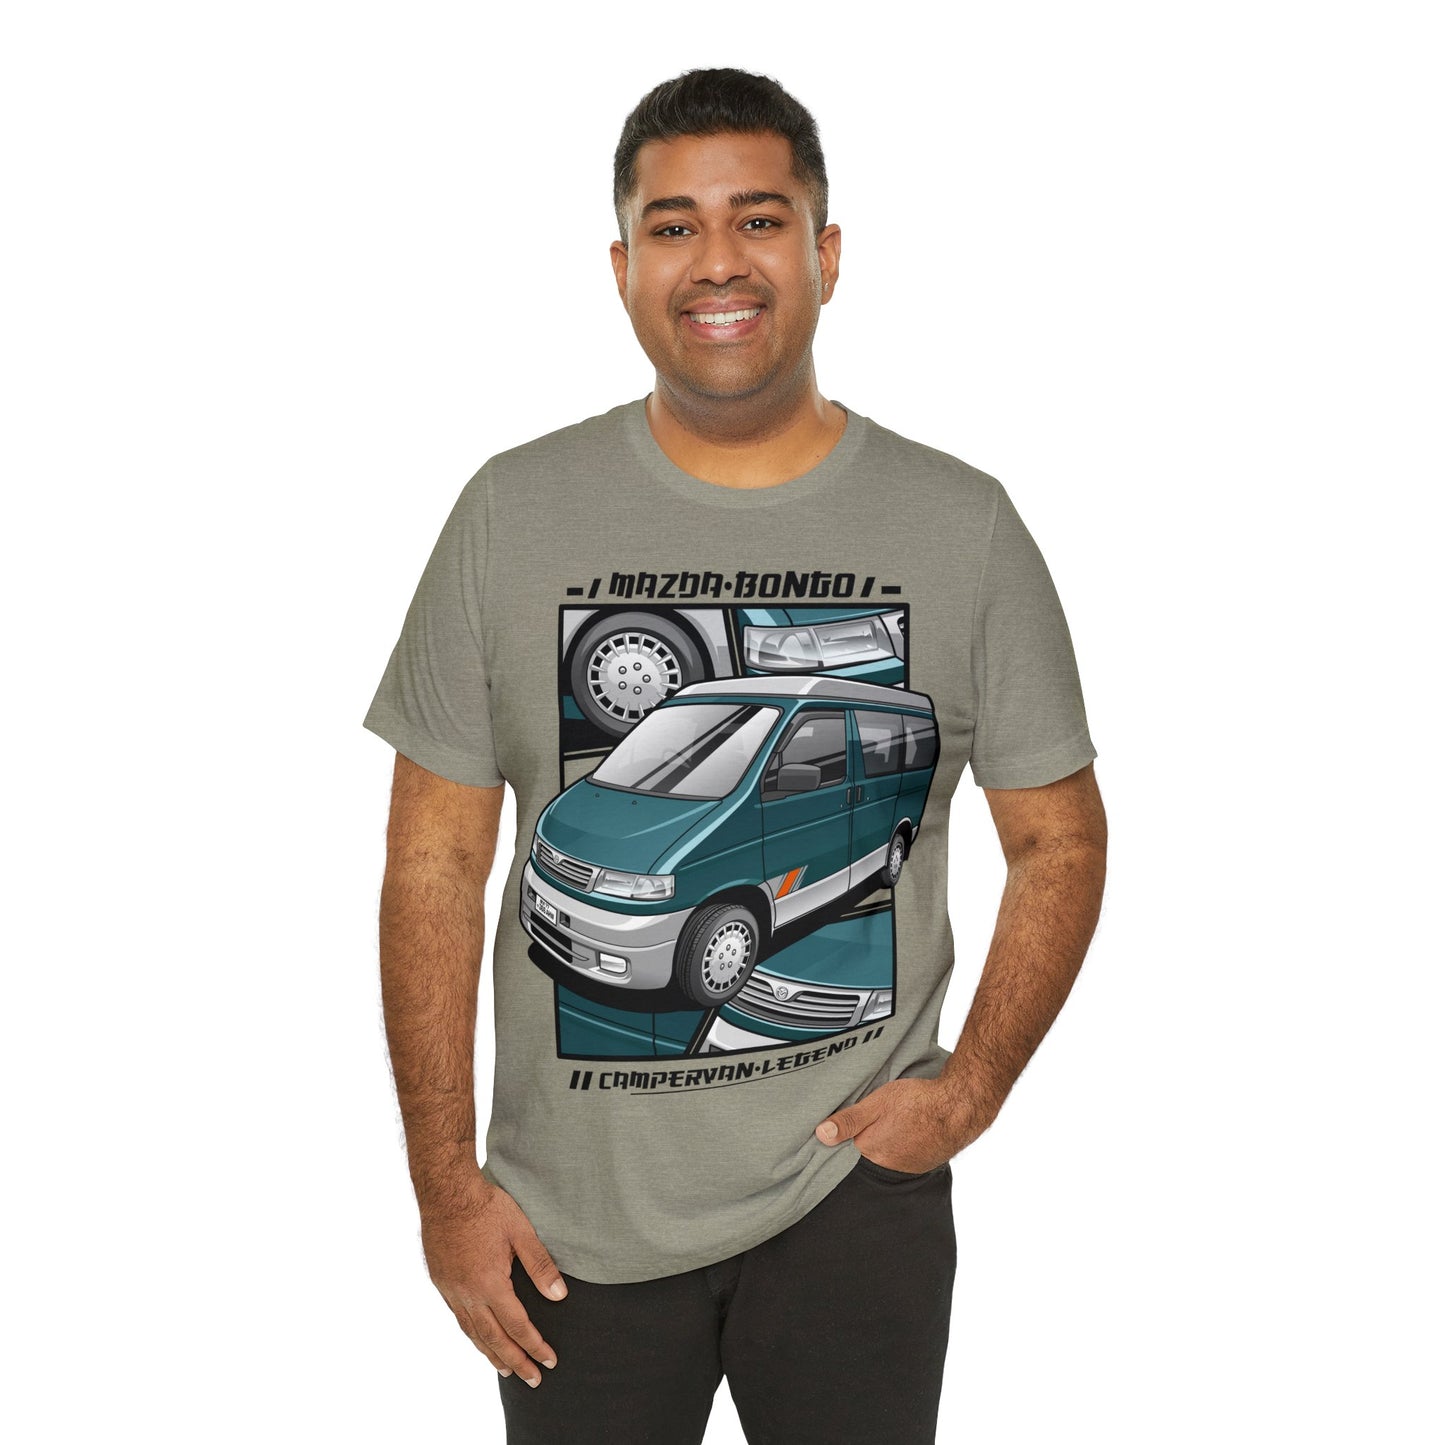 Mazda Bongo campervan legend Unisex Jersey Short Sleeve Tee